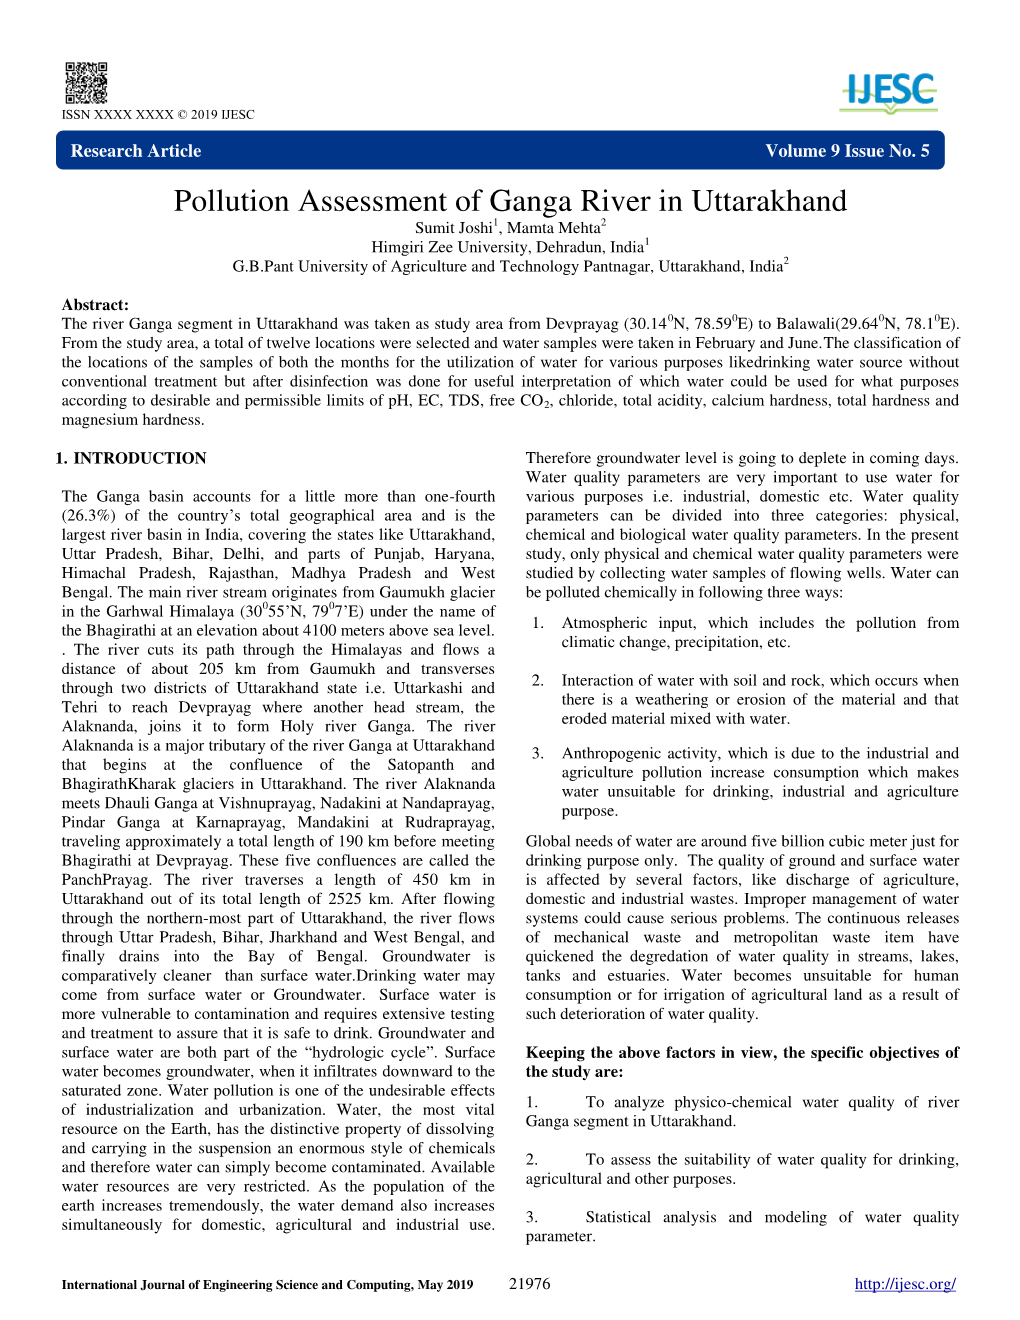 Pollution Assessment of Ganga River in Uttarakhand